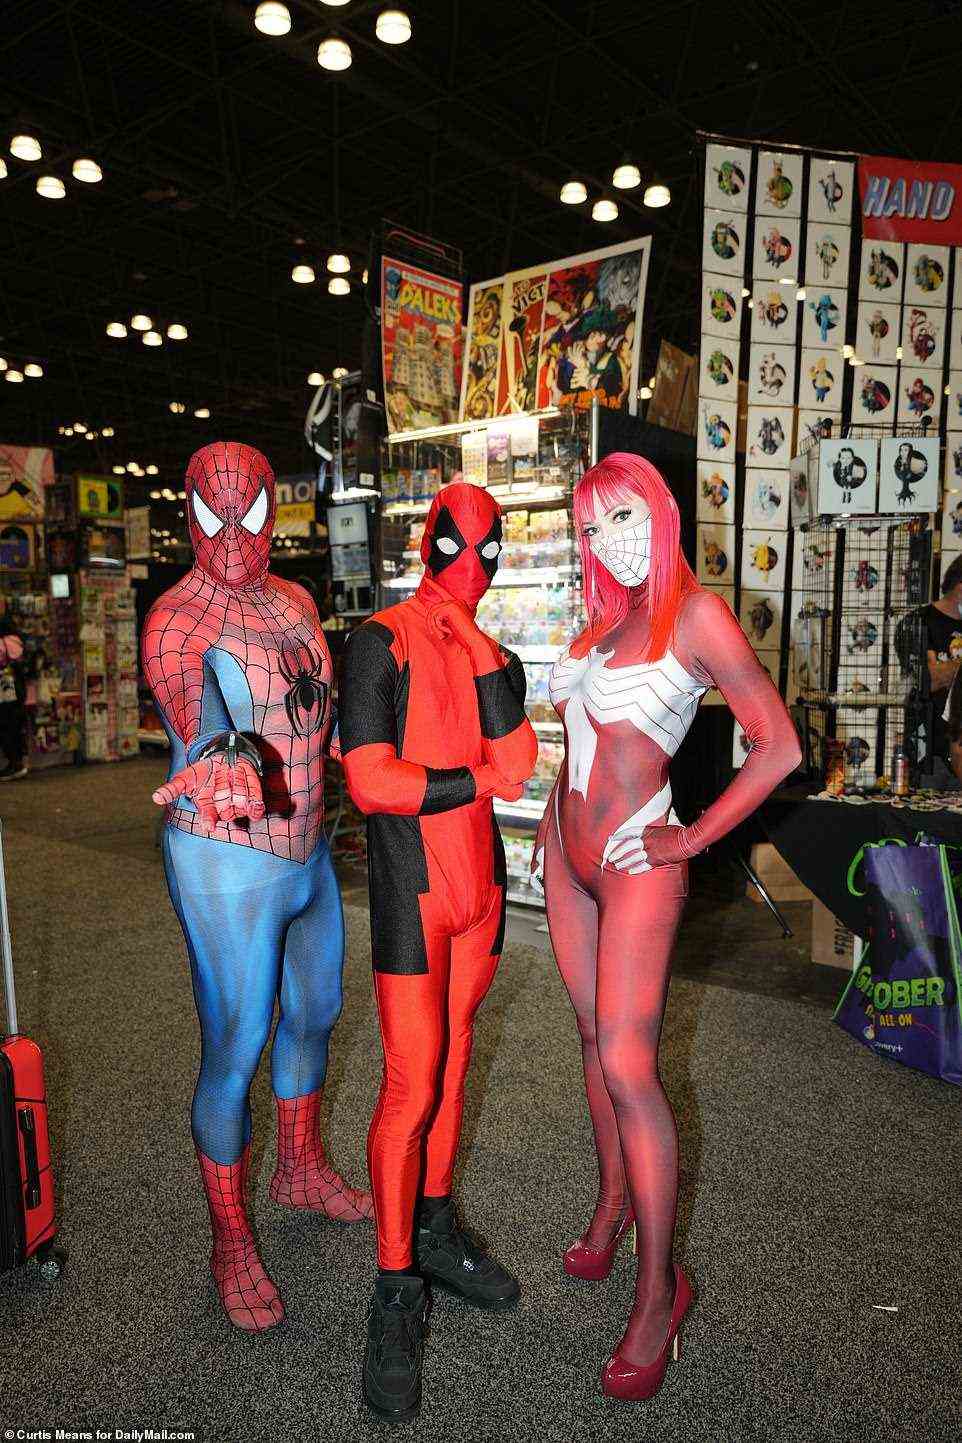 Viele der Kongressbesucher waren maskiert, um sich vor COVID-19 zu schützen und weil dies von ihren farbenfrohen Kostümen verlangt wurde, da sie als verschiedene Charaktere in Film, Fernsehen, Filmen und Comics wie diese Spidermen (und Spiderwoman) cosplayten.